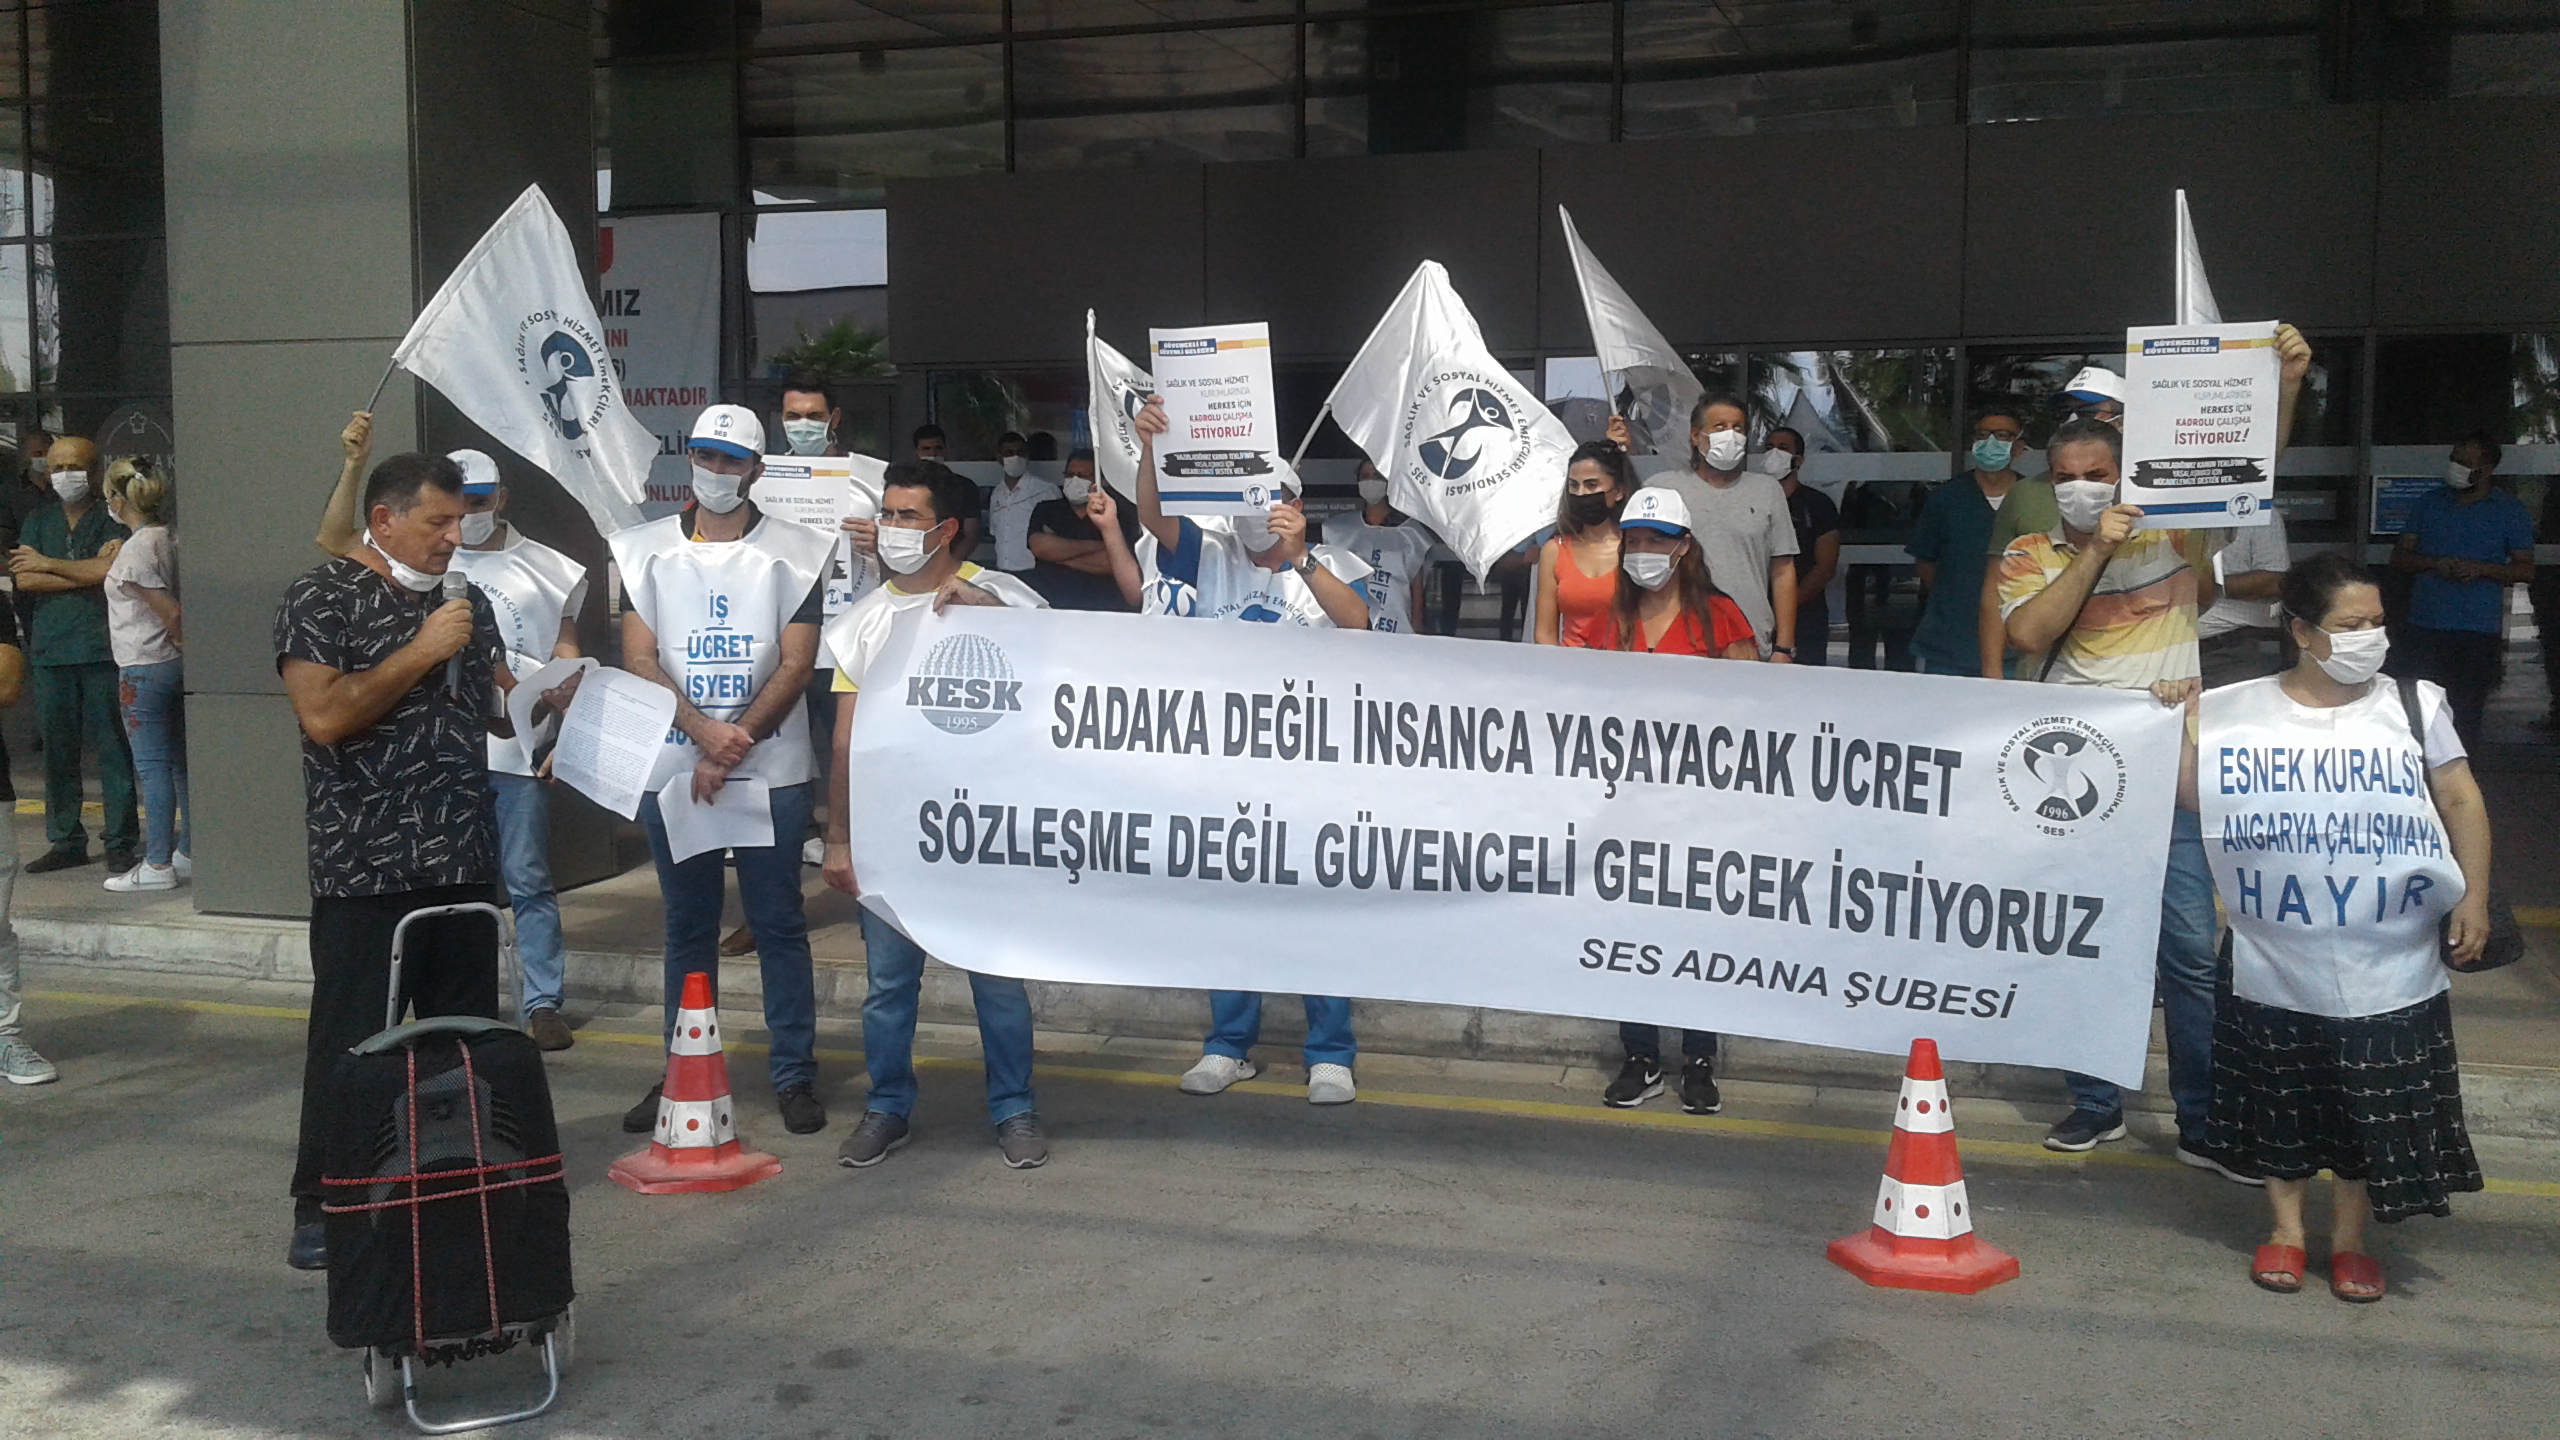 Adana Şubemiz: Sadaka Değil İnsanca Yaşayacak Ücret, Sözleşme Değil Güvenceli Gelecek İstiyoruz